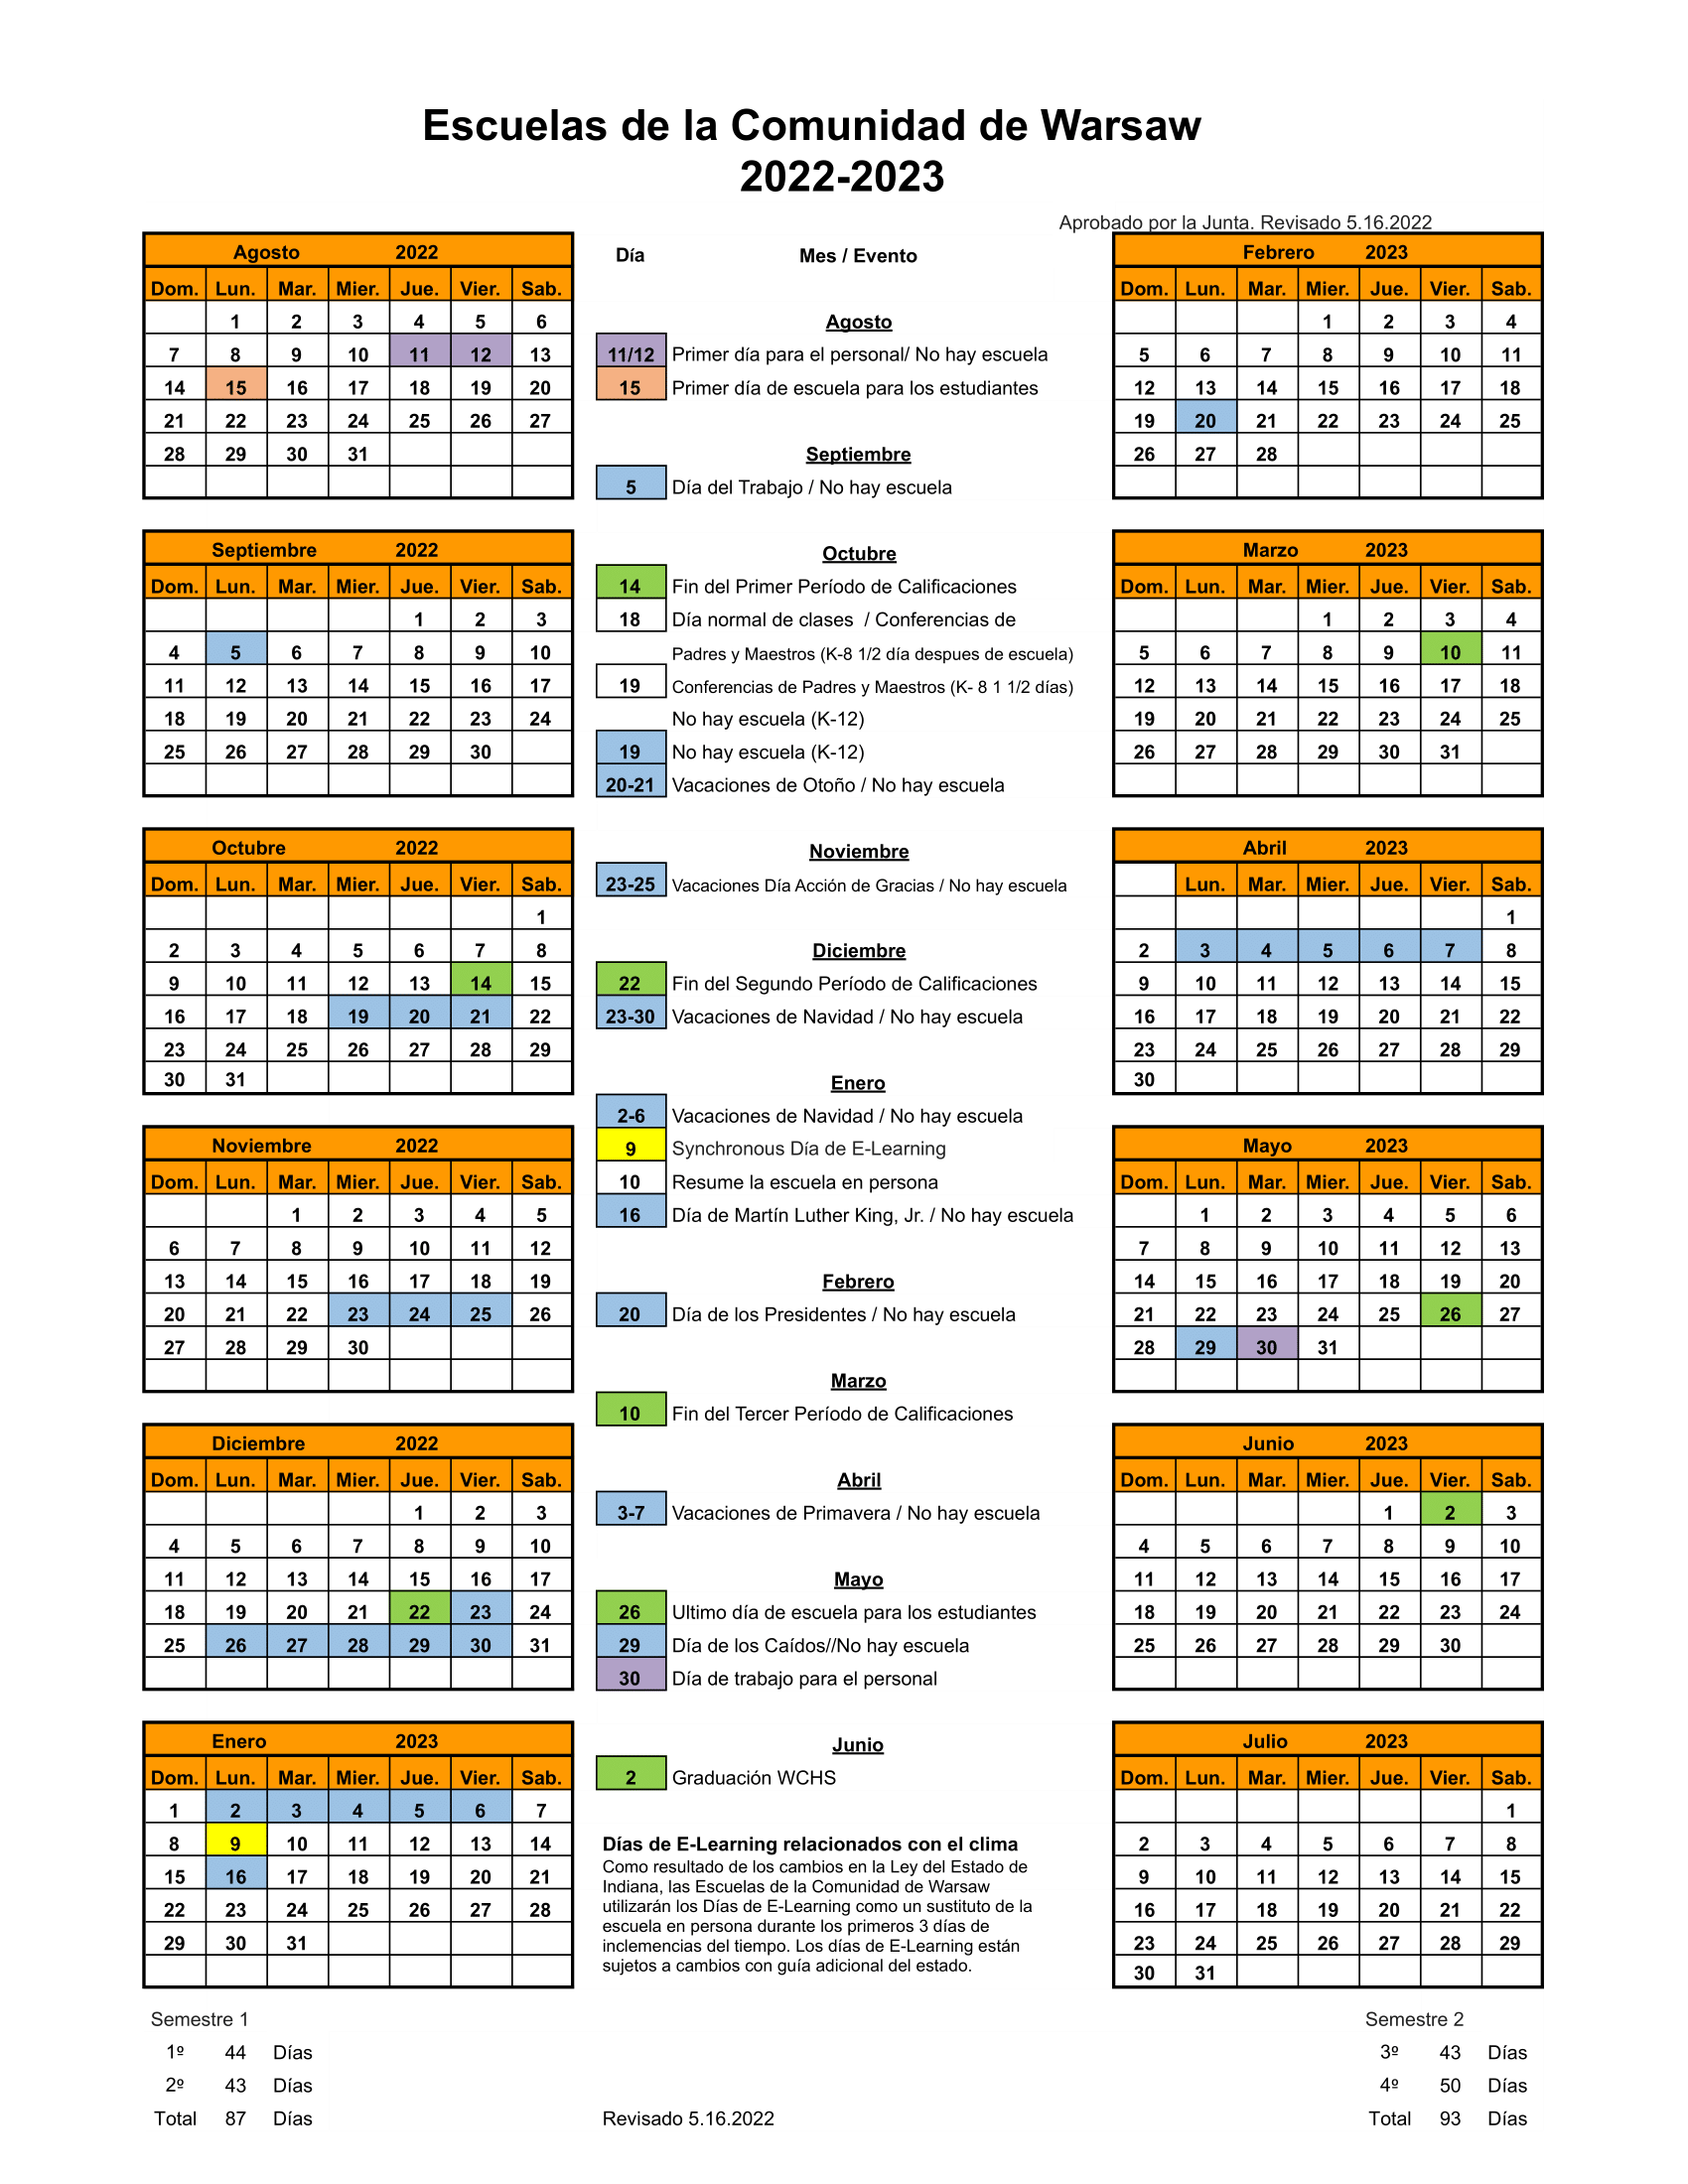 Calendar 22-23 Spanish